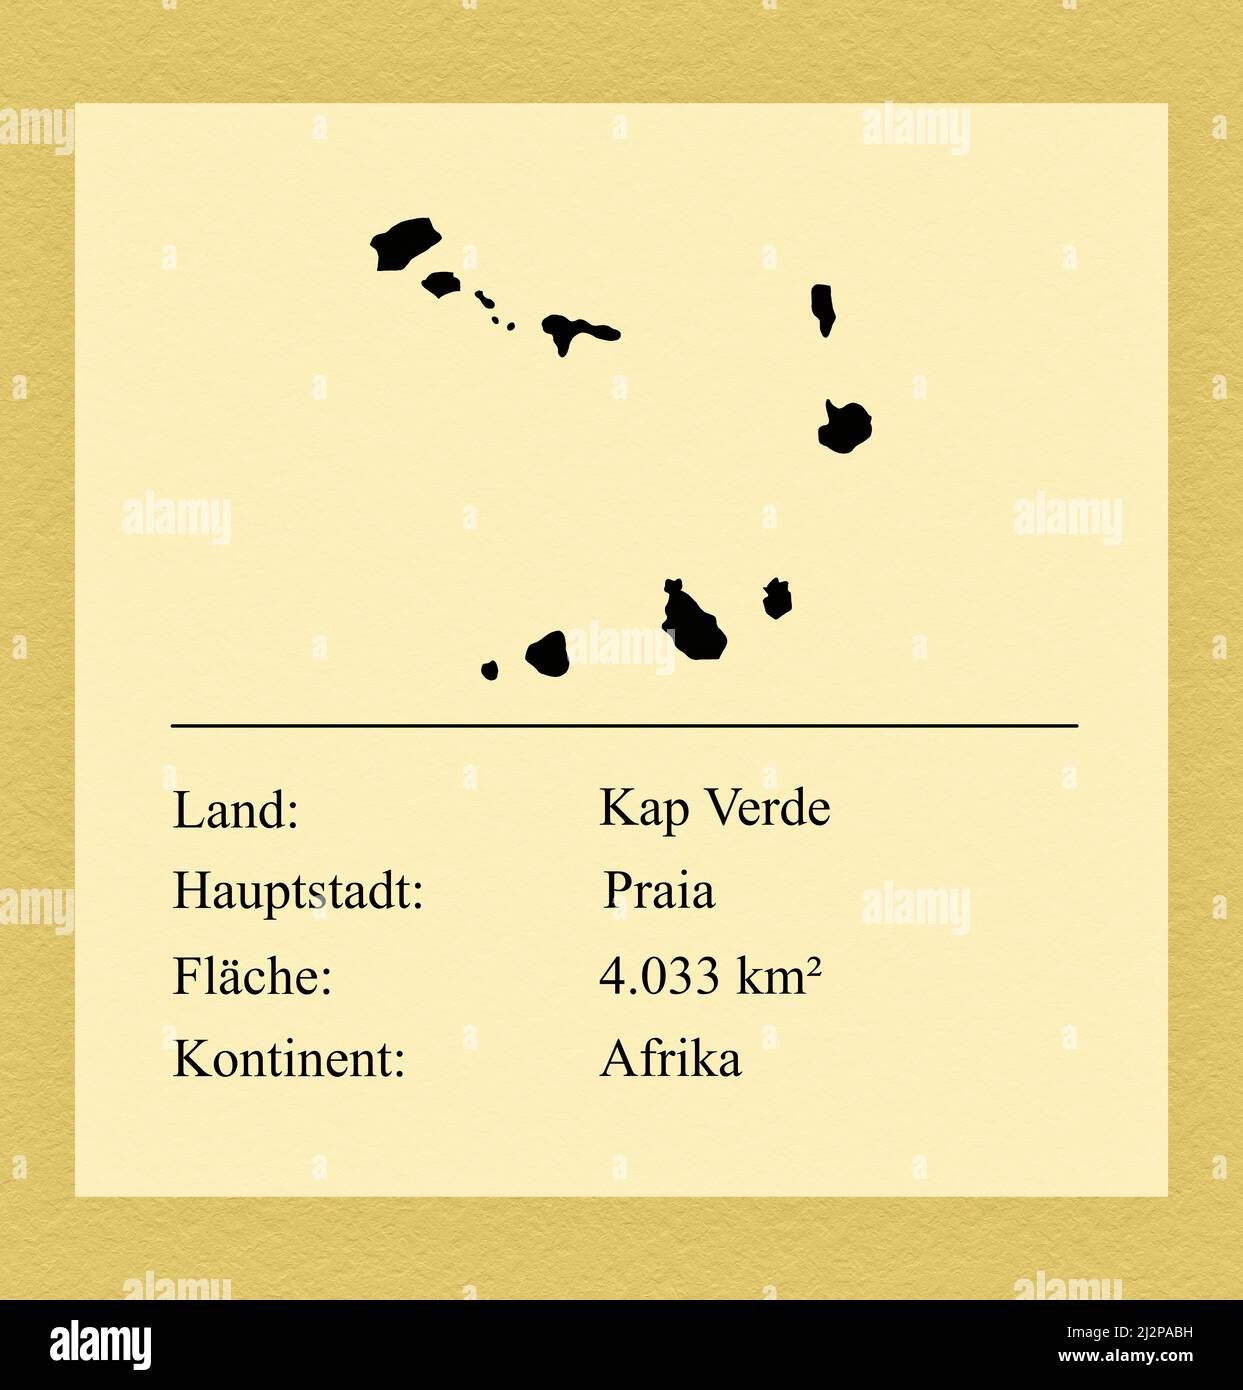 Umrisse des Landes Kap Verde, darunter ein kleiner Steckbrief mit Ländernamen, Hauptstadt, Fläche und Kontinent Foto de stock